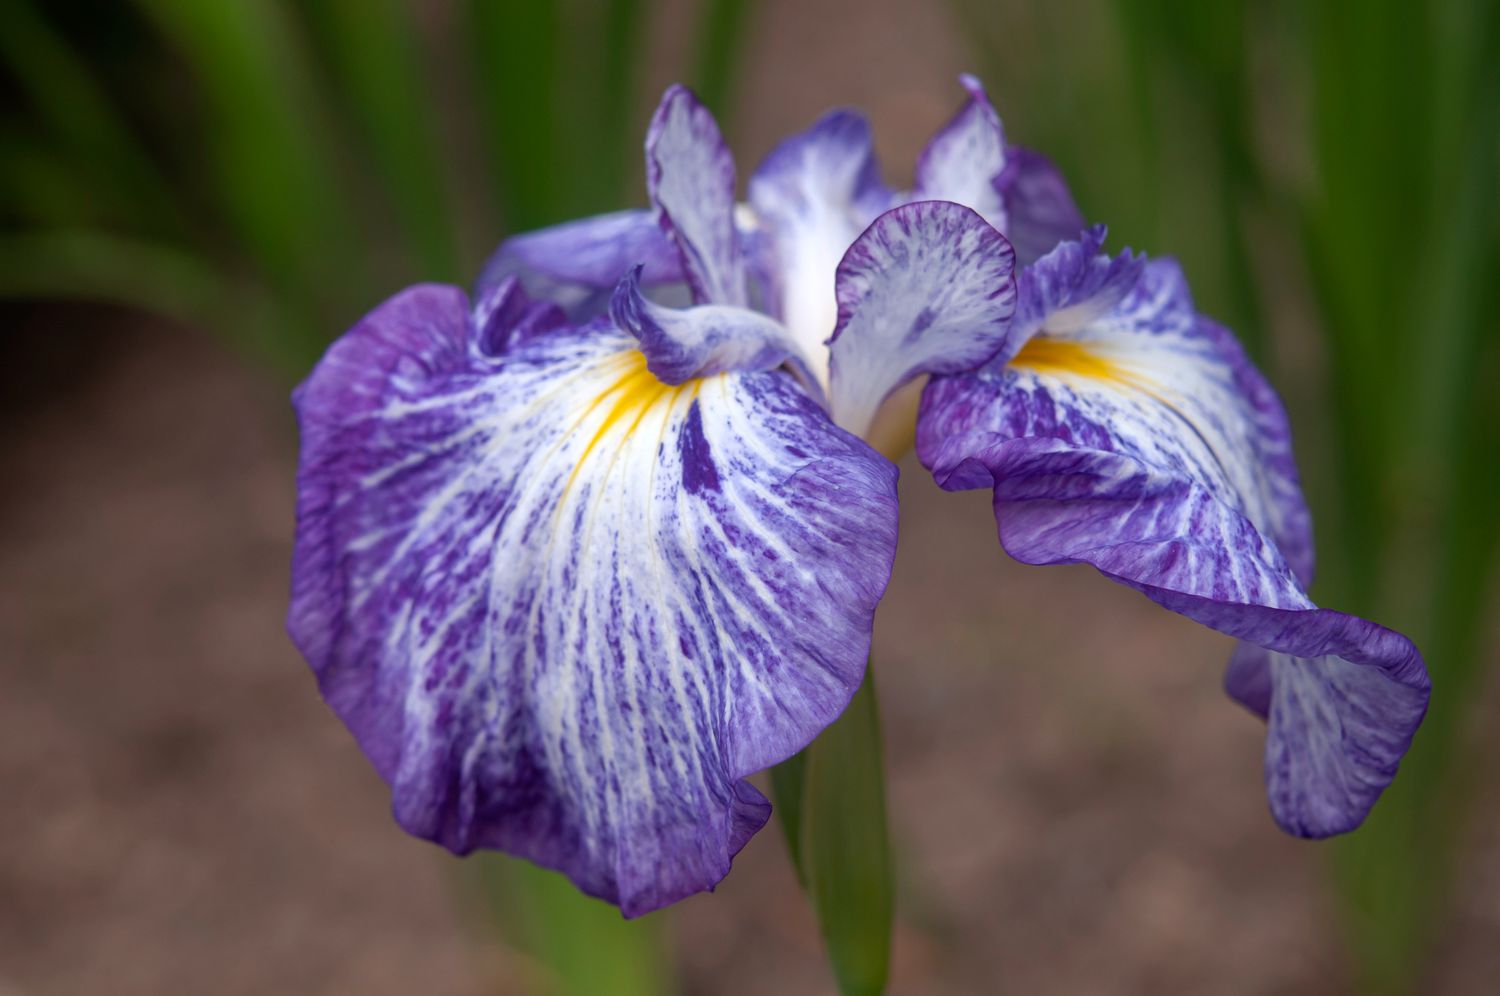 Usine d'iris japonais avec gros plan de pétales plats striés de violet, blanc et jaune